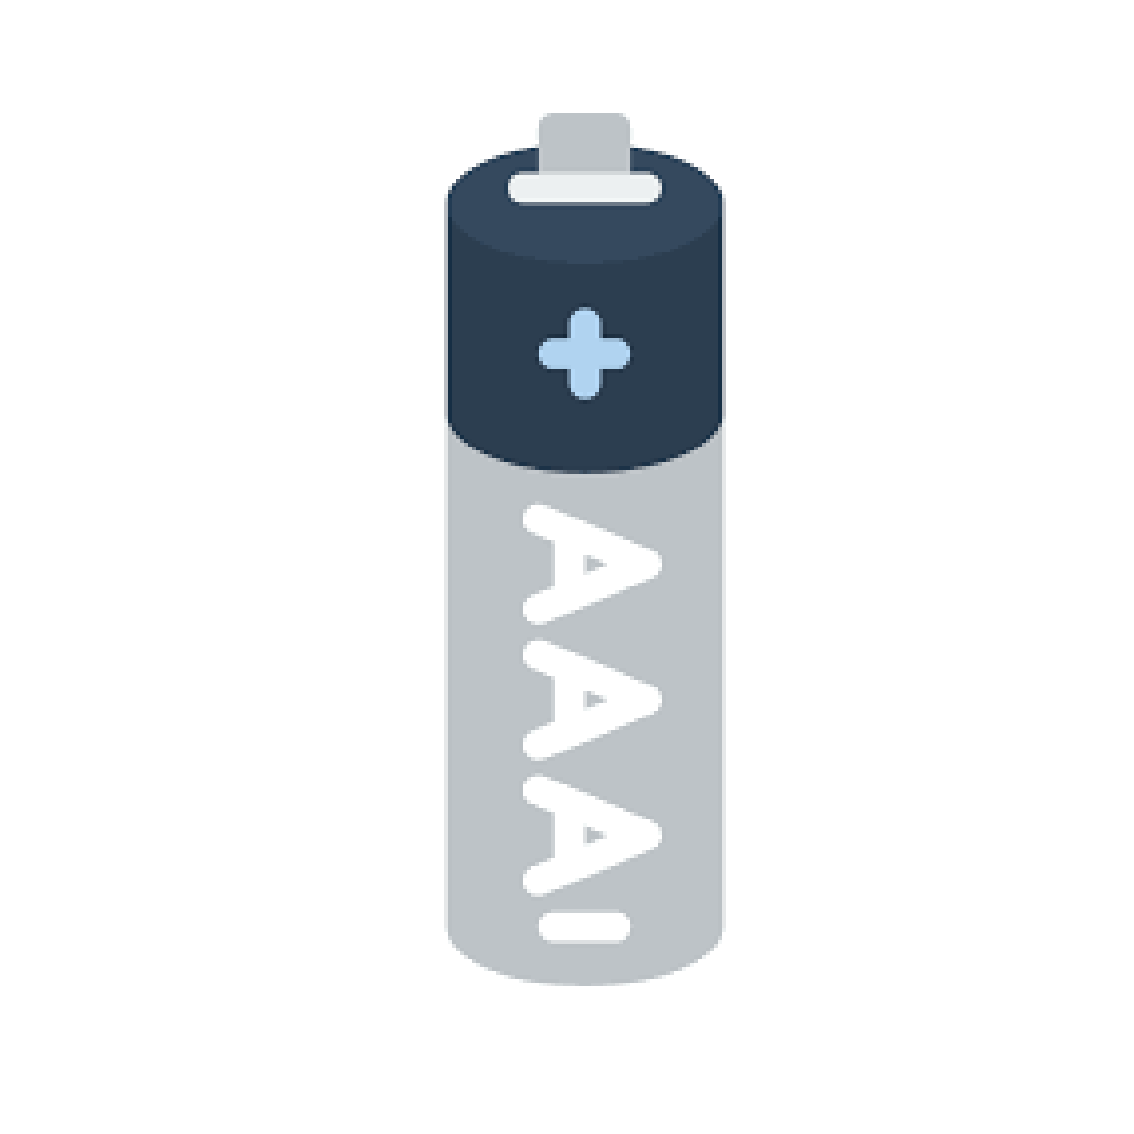 AAA Batterien